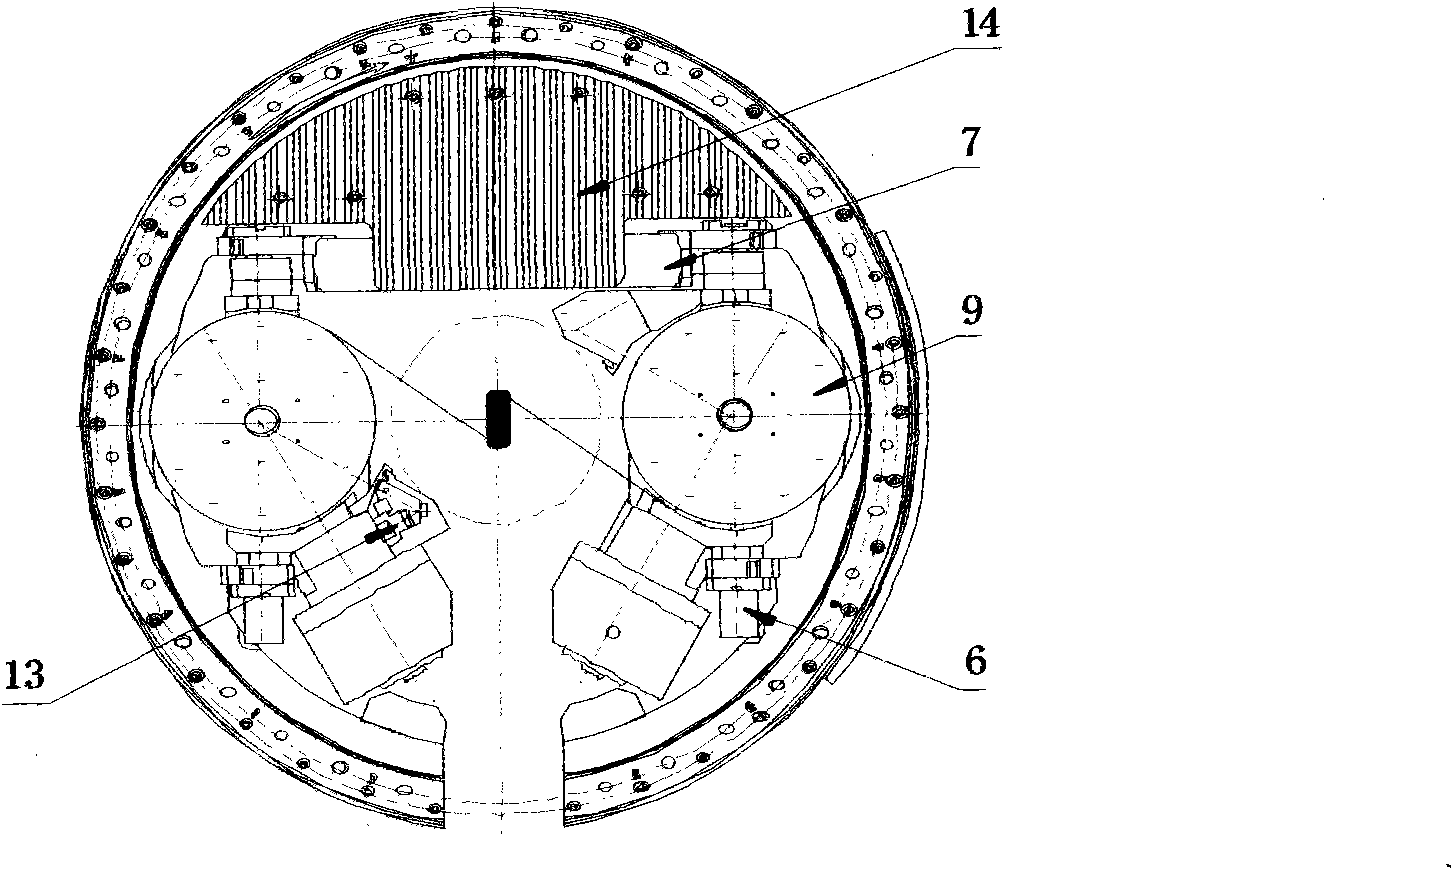 Full-functional belting rotary disk